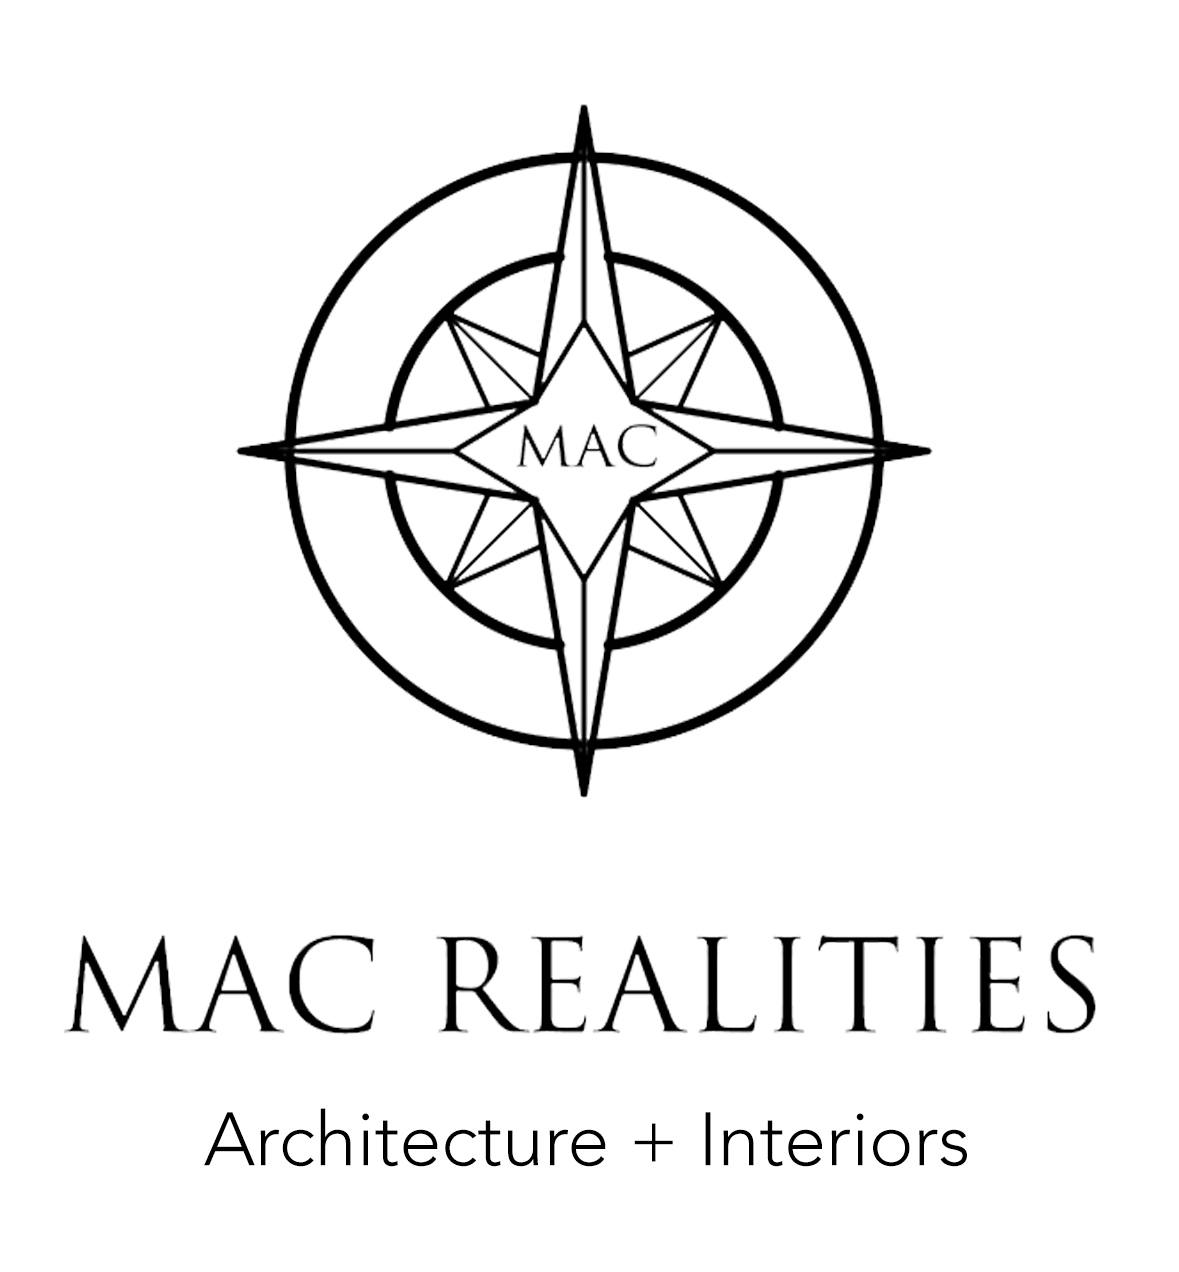 Macrealities Design Pvt.Ltd